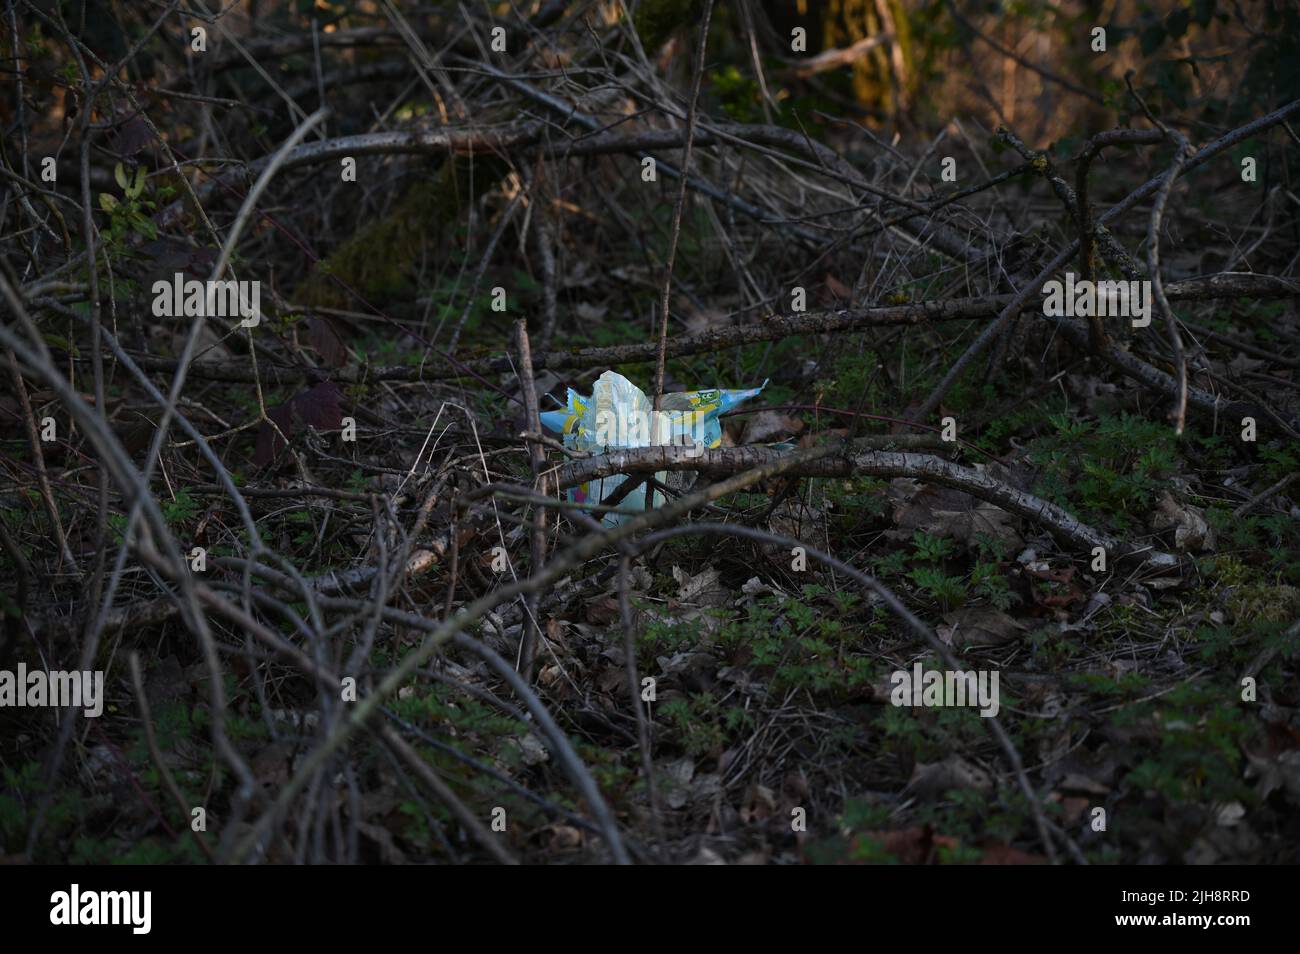 La basura en el bosque - contaminación ambiental Foto de stock